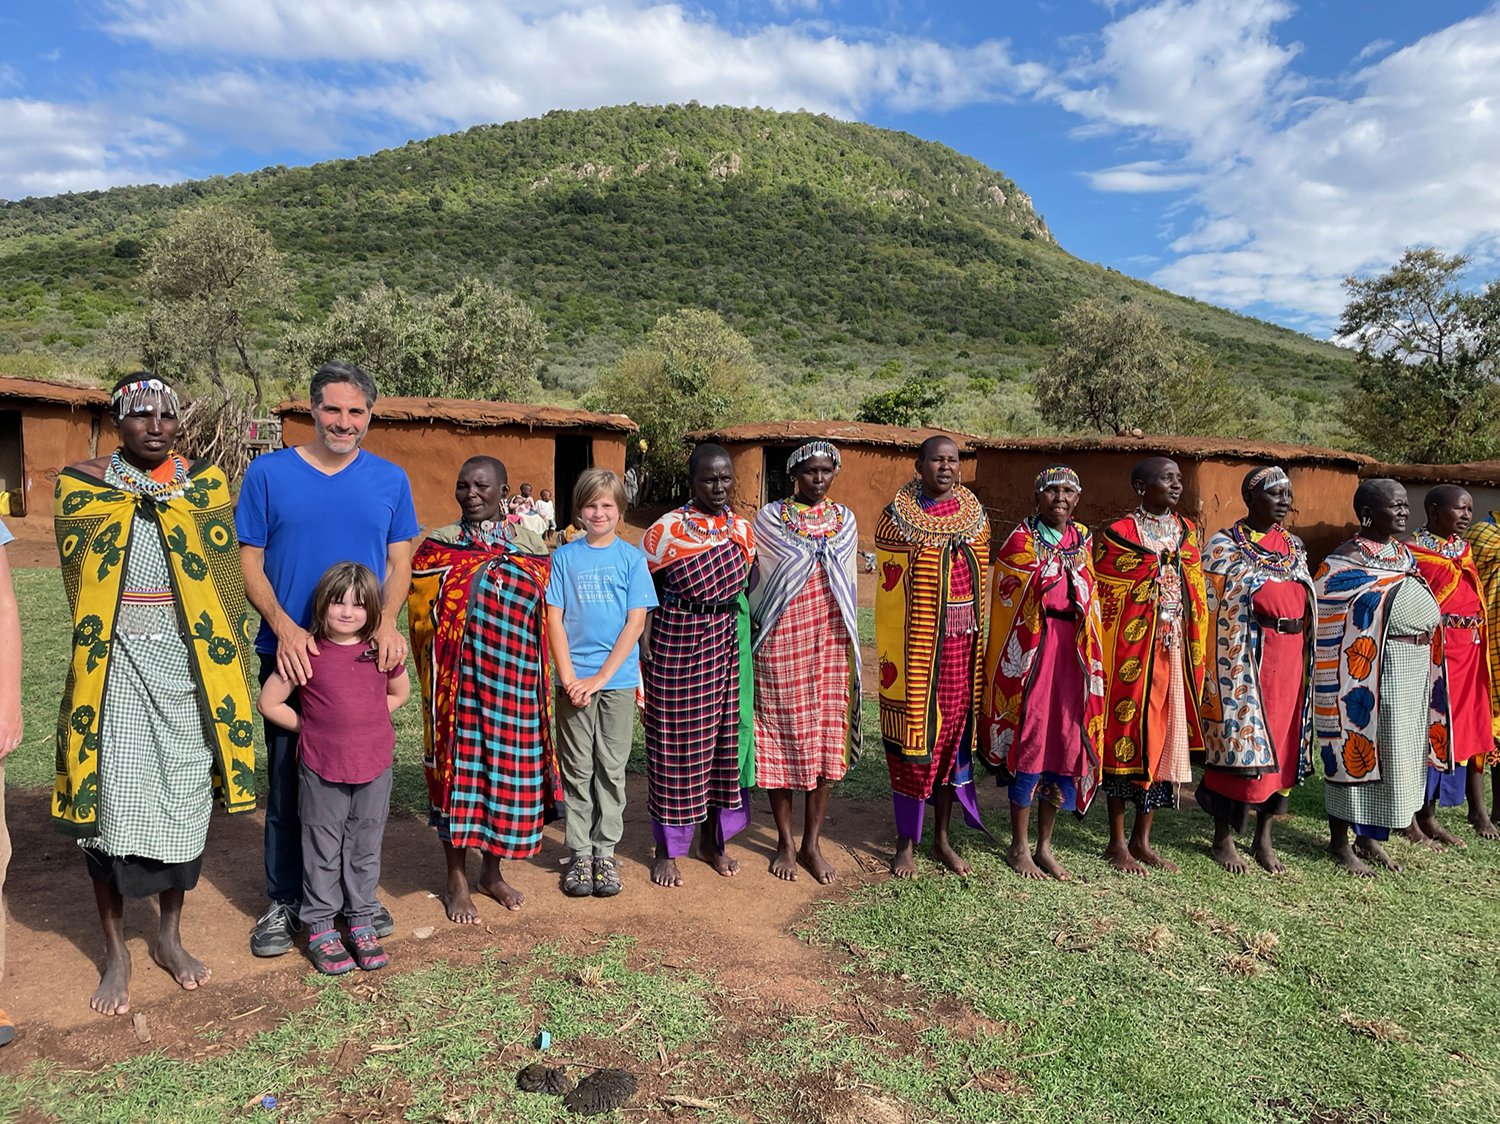 At the Masai village